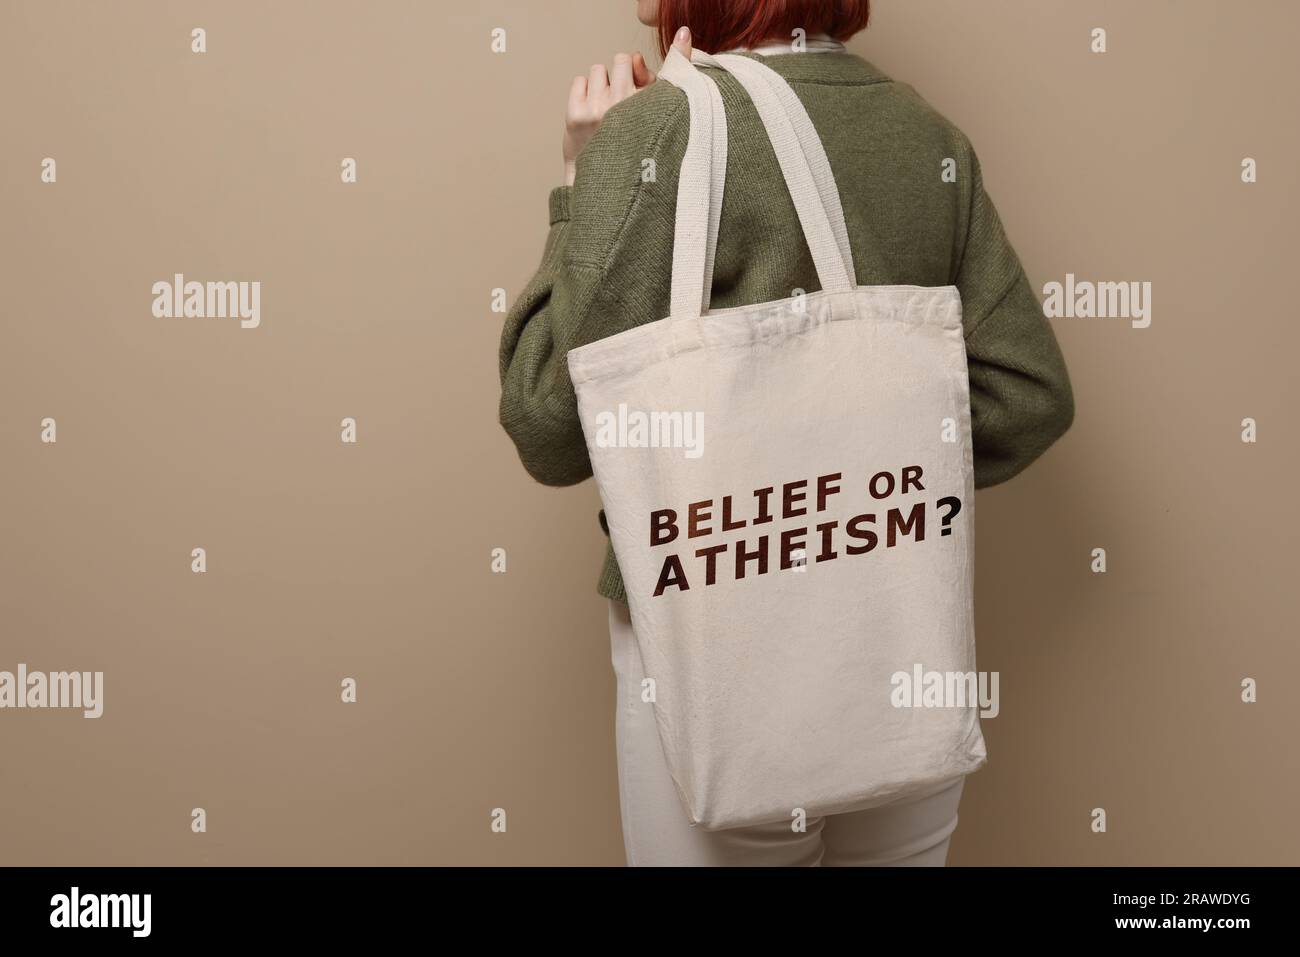 Donna che tiene la borsa con frase credenza o ateismo? su sfondo beige, primo piano Foto Stock